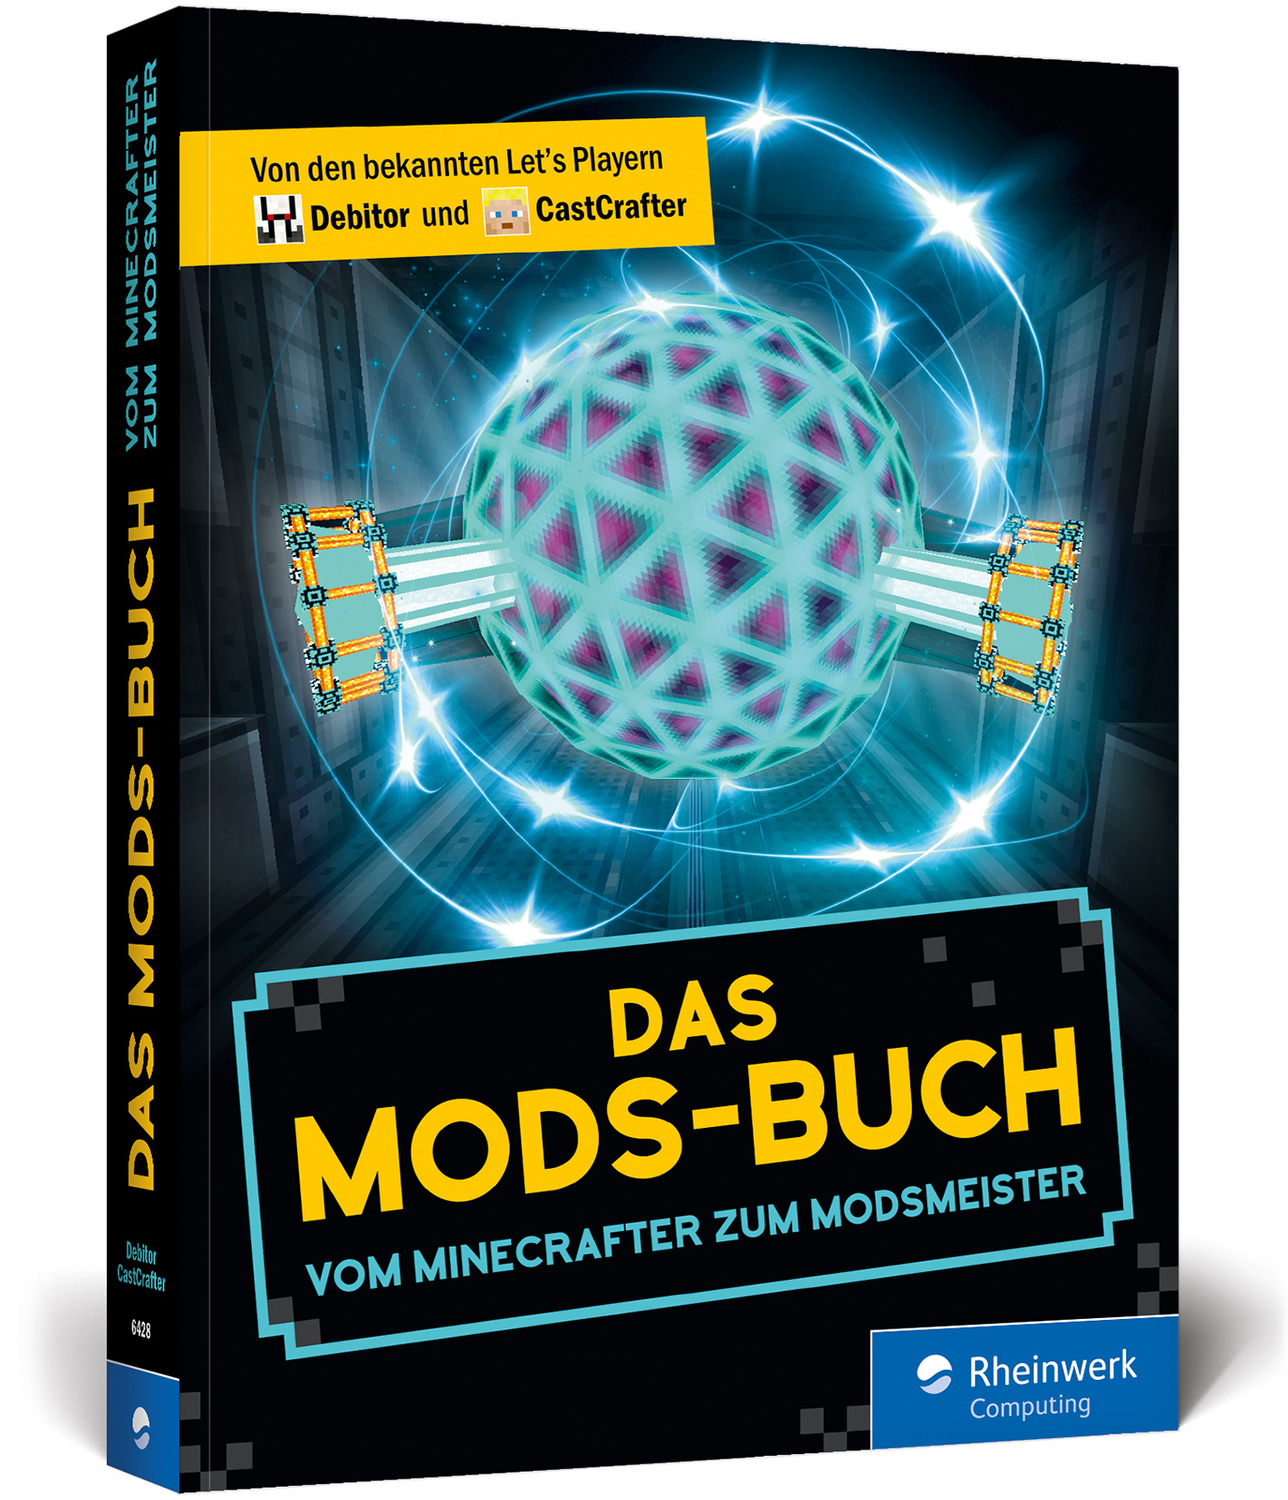 Das Mods Buch Die Besten Mods Fur Minecraft Autocrafting Hightech Bucher Gebraucht Antiquarisch Neu Kaufen